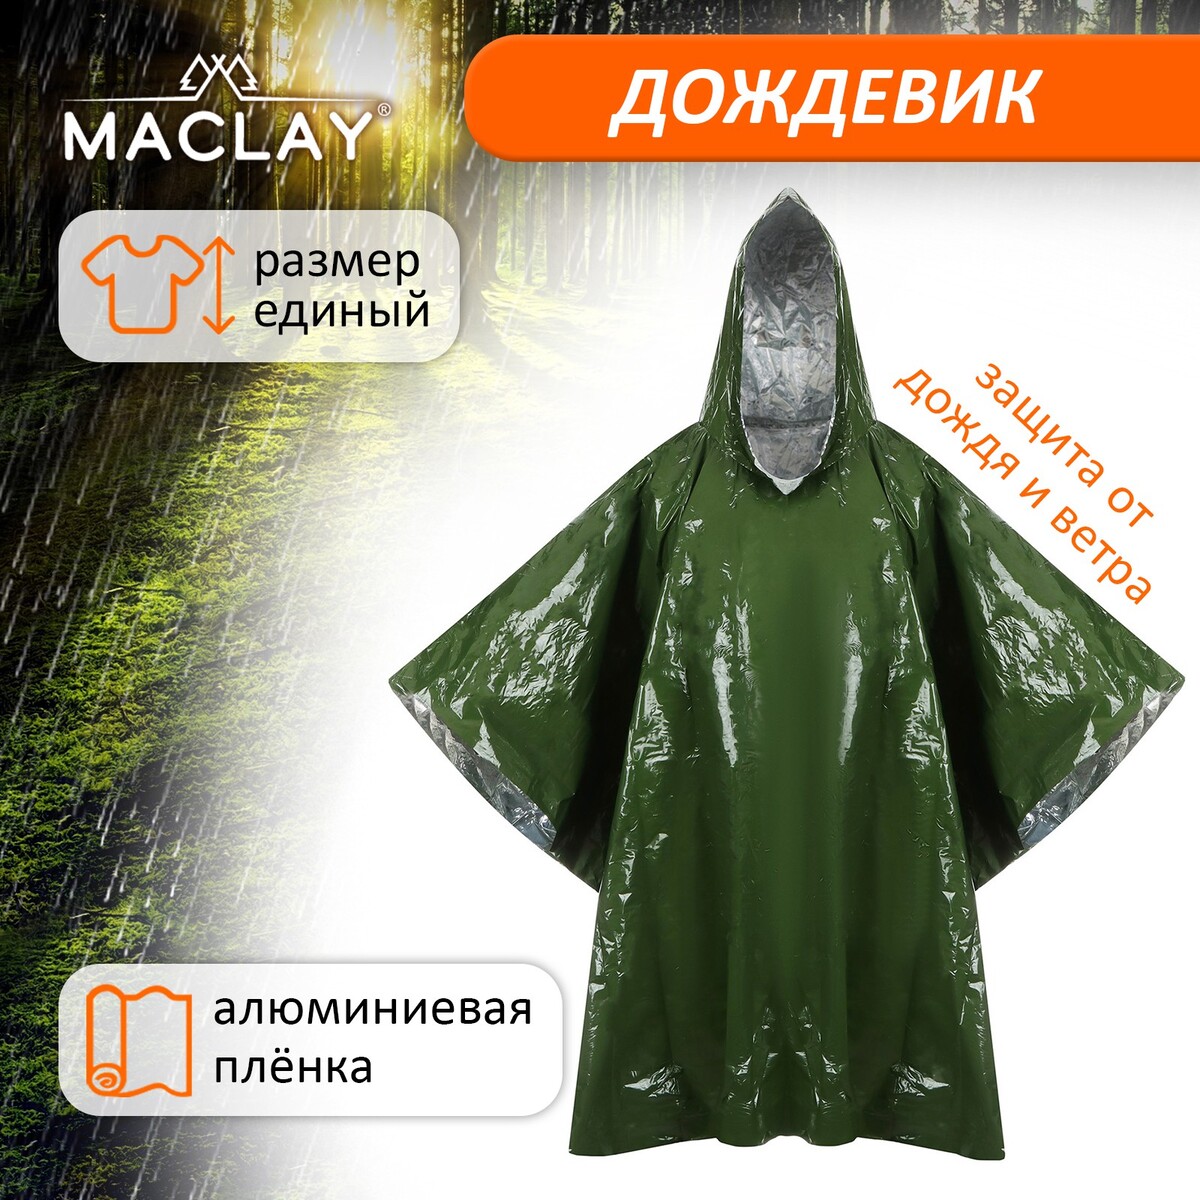 фото Дождевик maclay, фольгированный, 100х125 см, цвет хаки